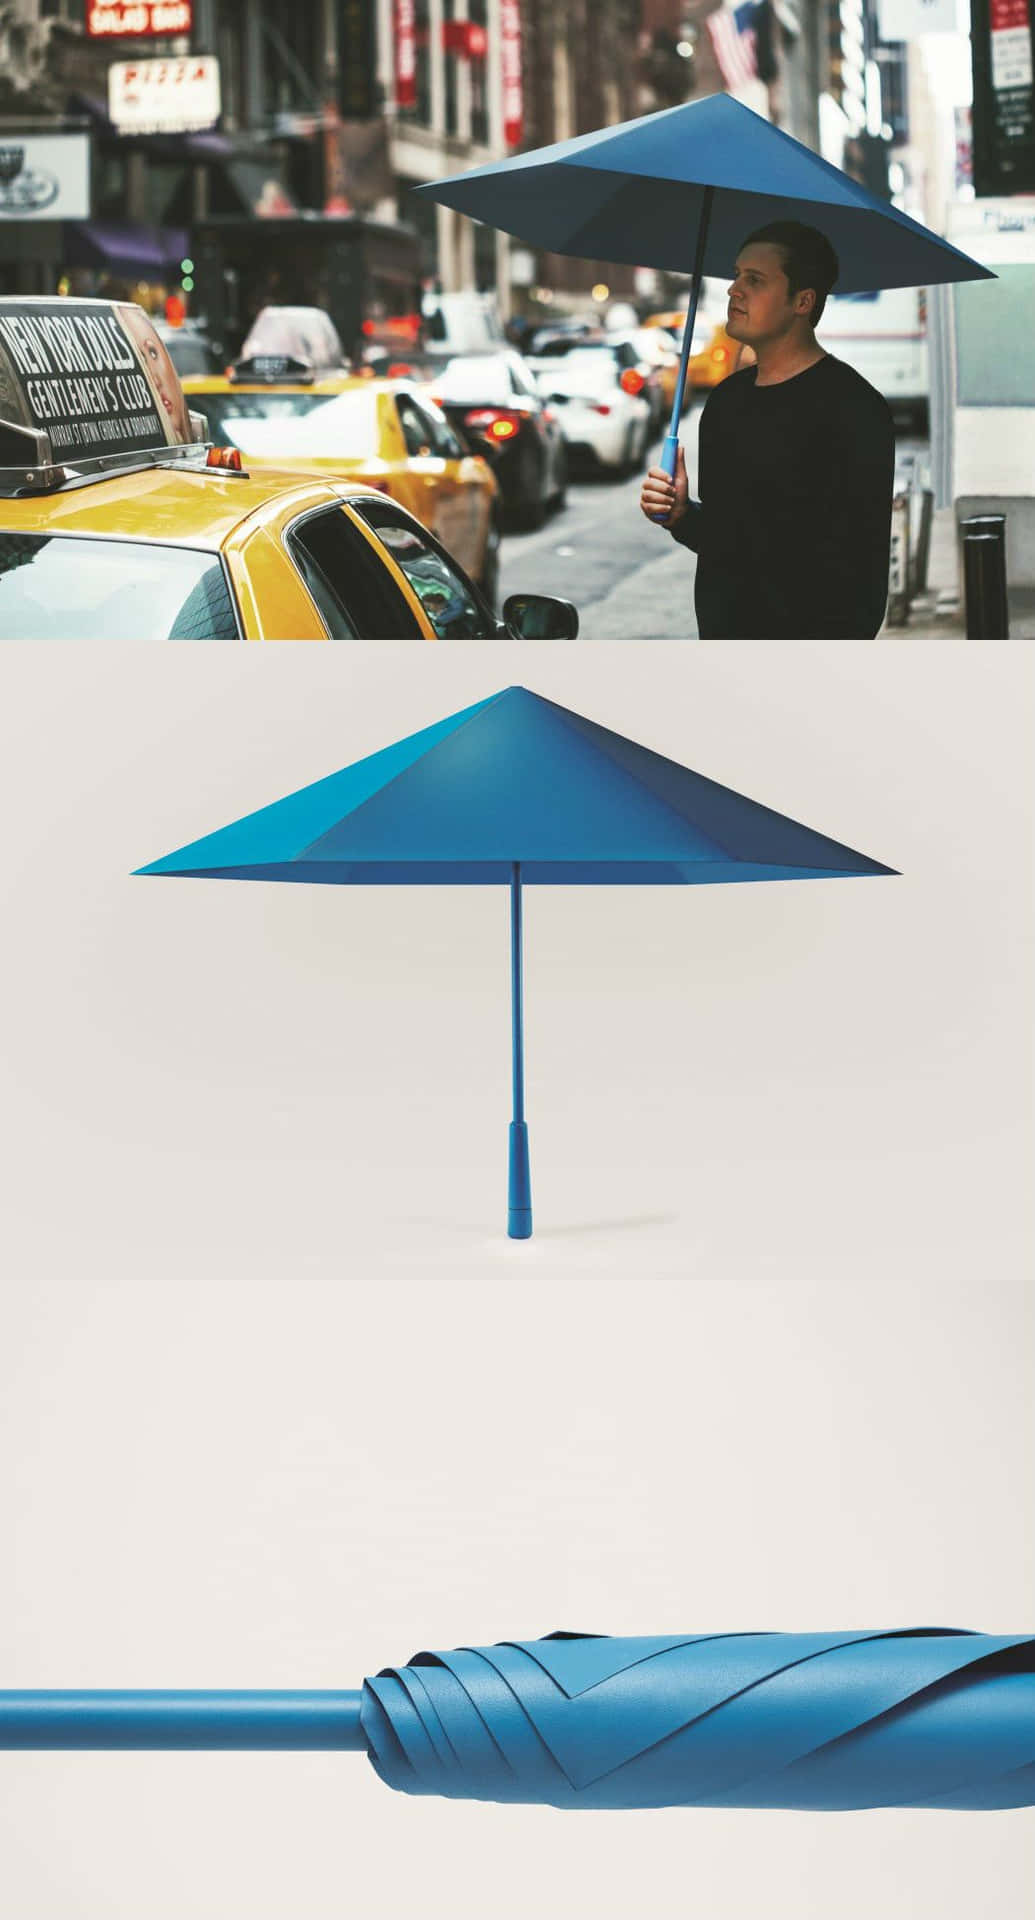 Bright Umbrellas in a Rainy Day